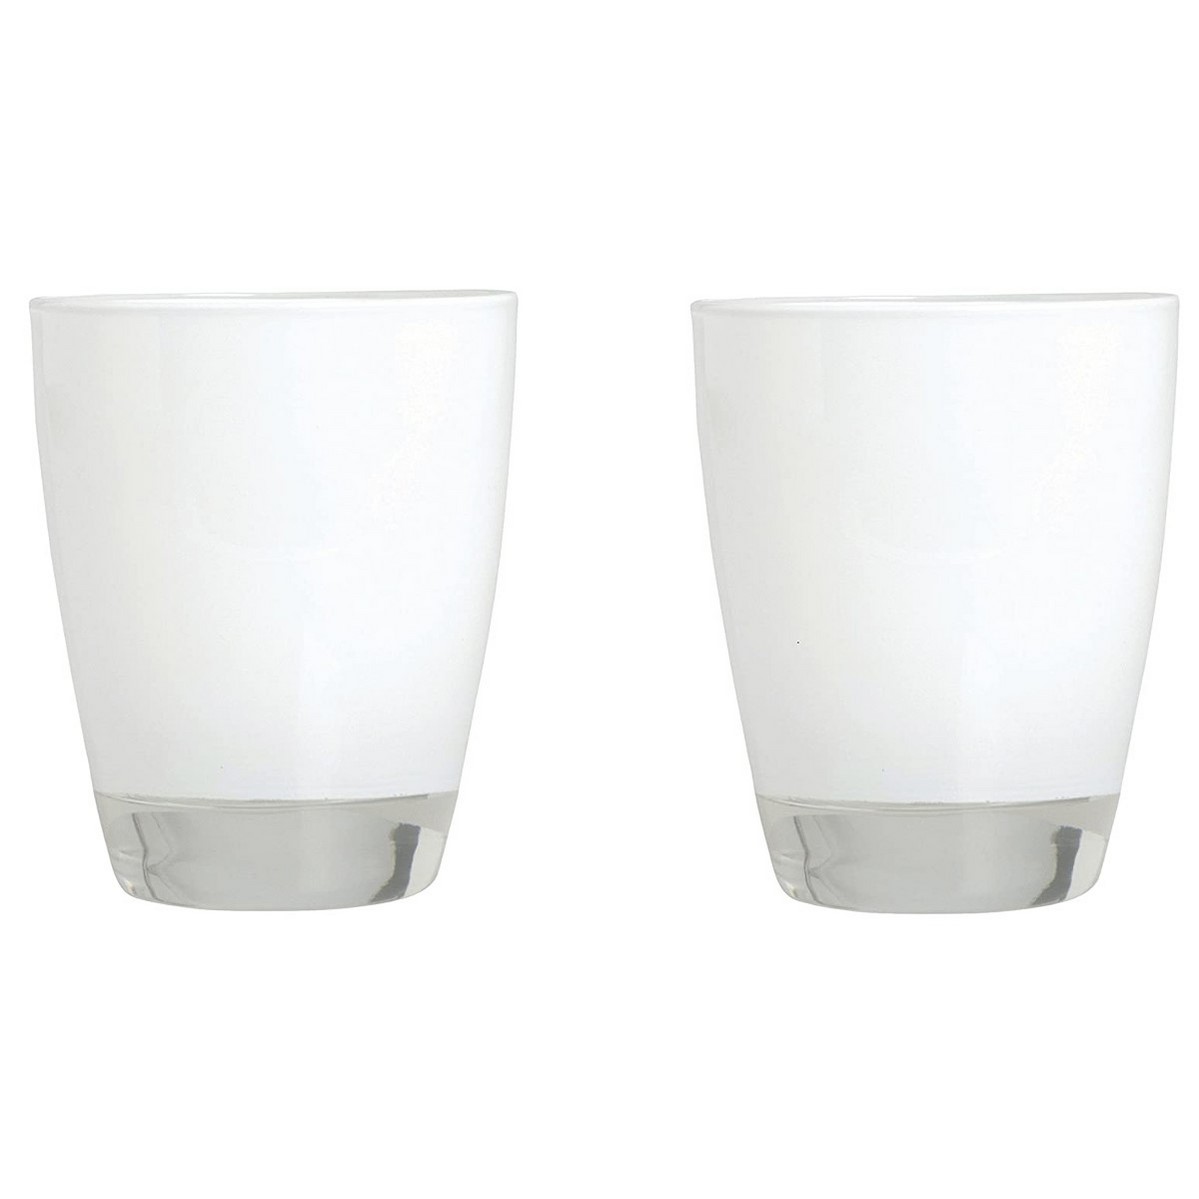 Bicchiere acqua vetro colorato serie Happy bianco cl 30 set 2 pezzi